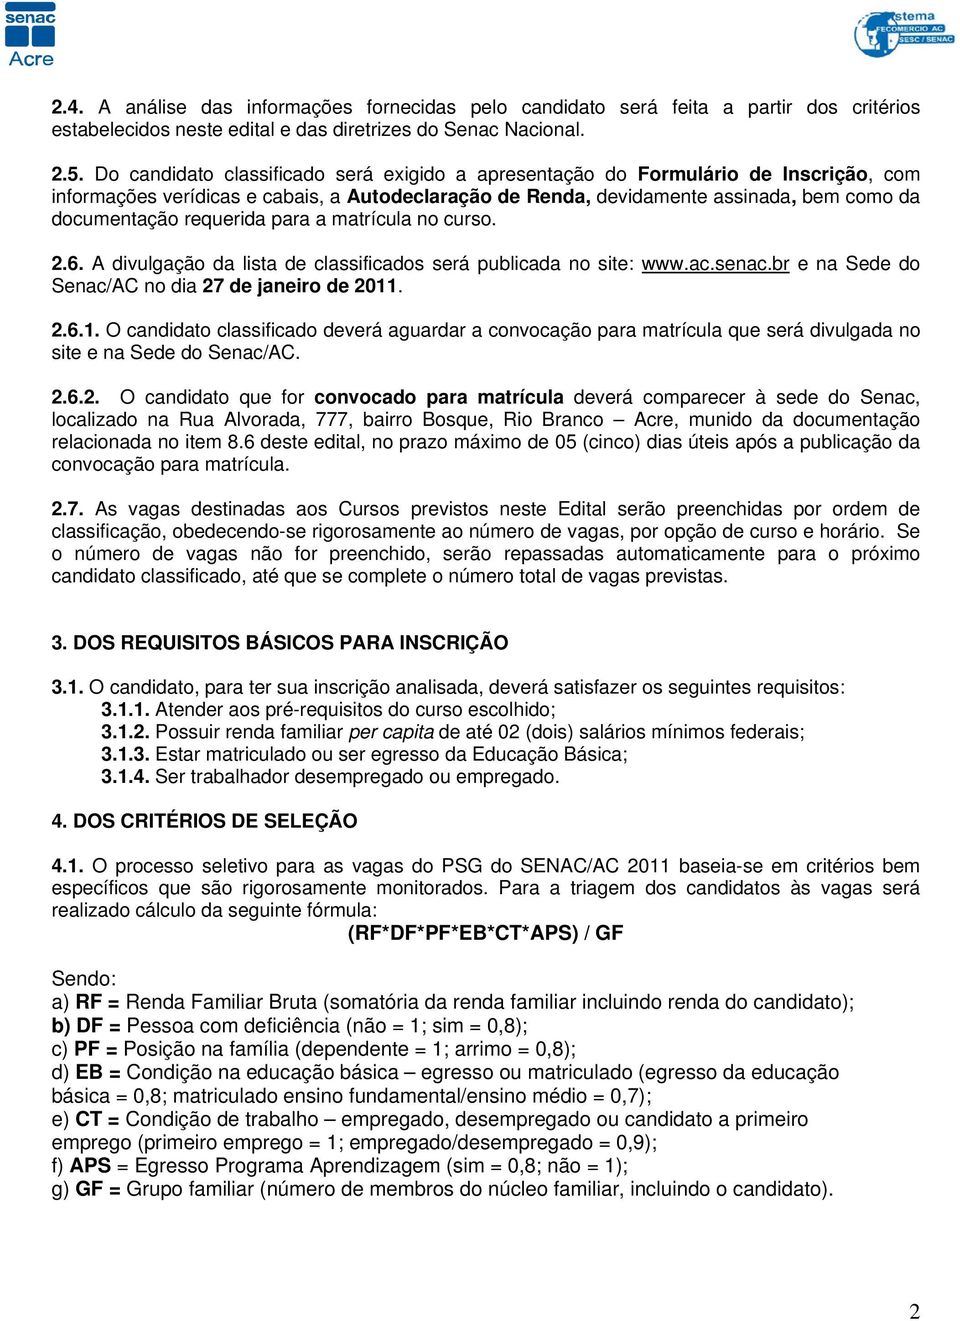 requerida para a matrícula no curso. 2.6. A divulgação da lista de classificados será publicada no site: www.ac.senac.br e na Sede do Senac/AC no dia 27 de janeiro de 2011